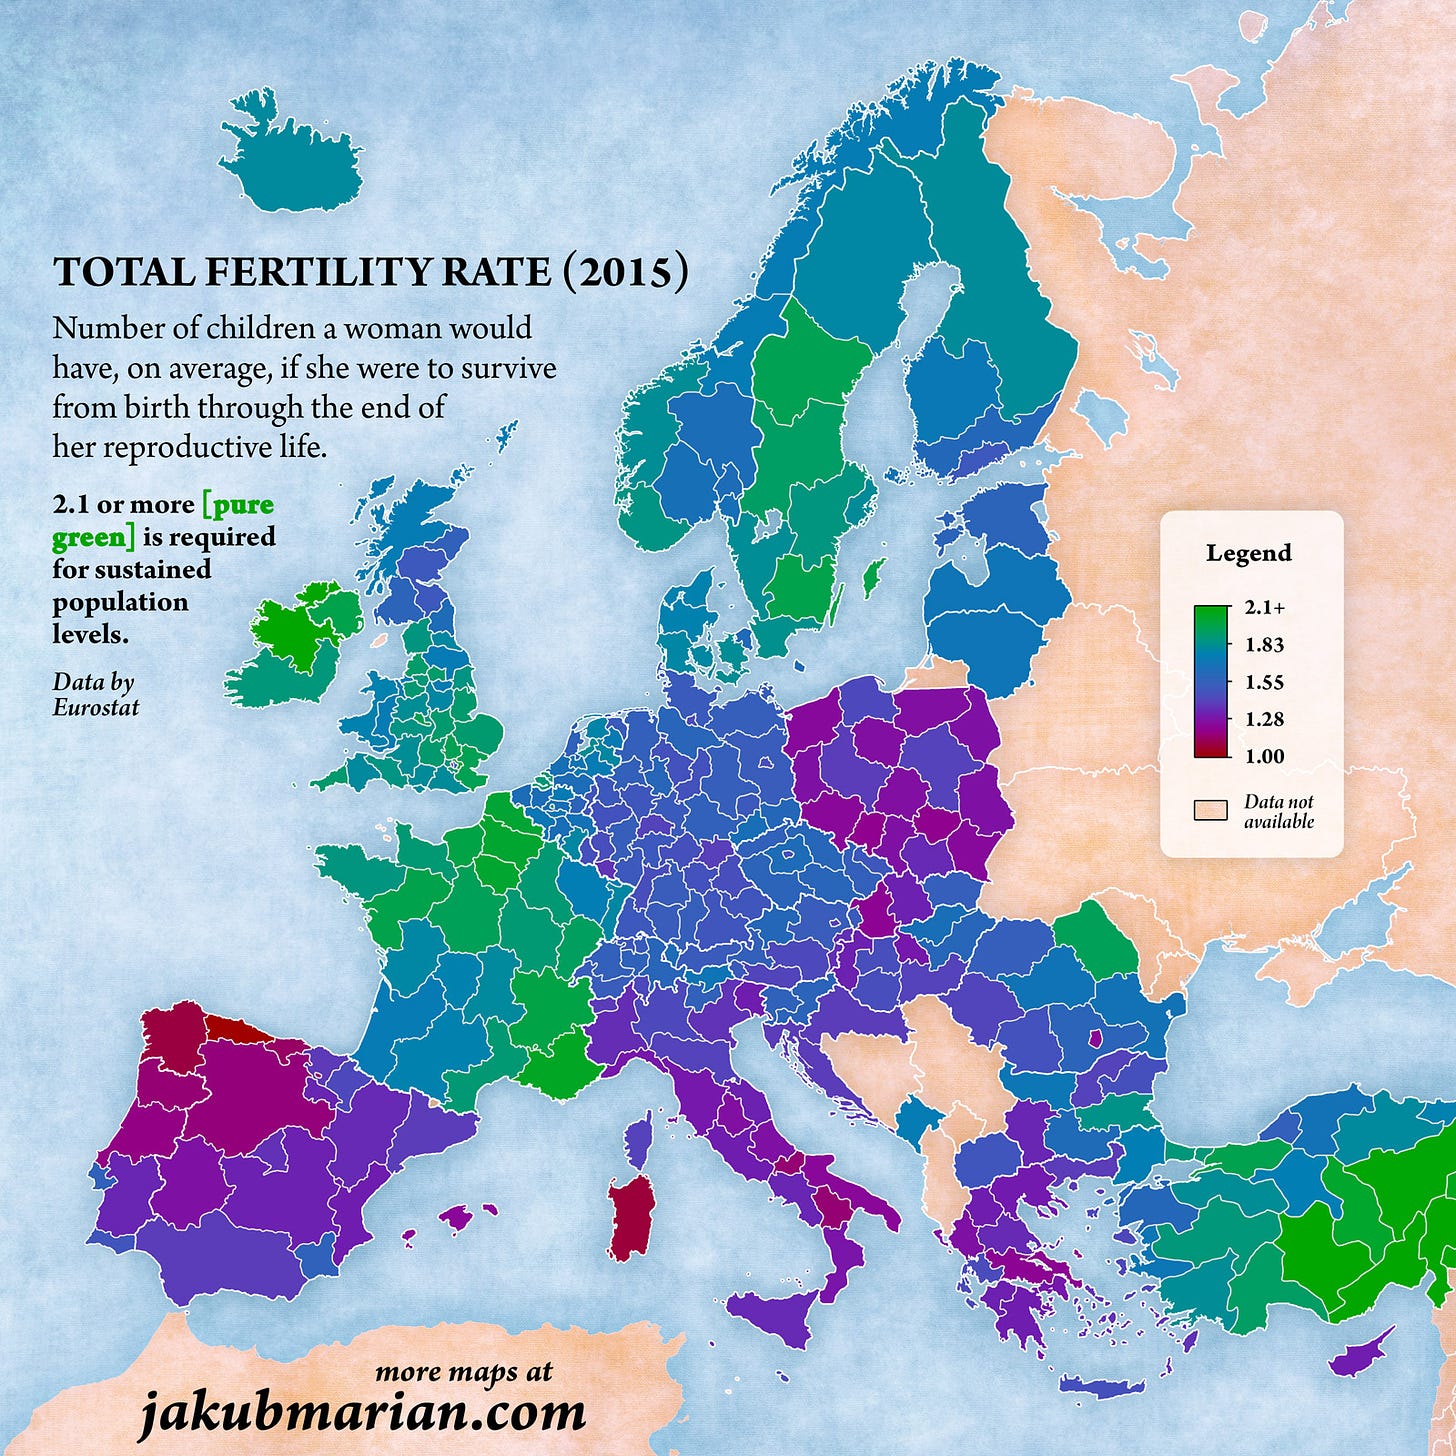 Fertility rate by region in Europe